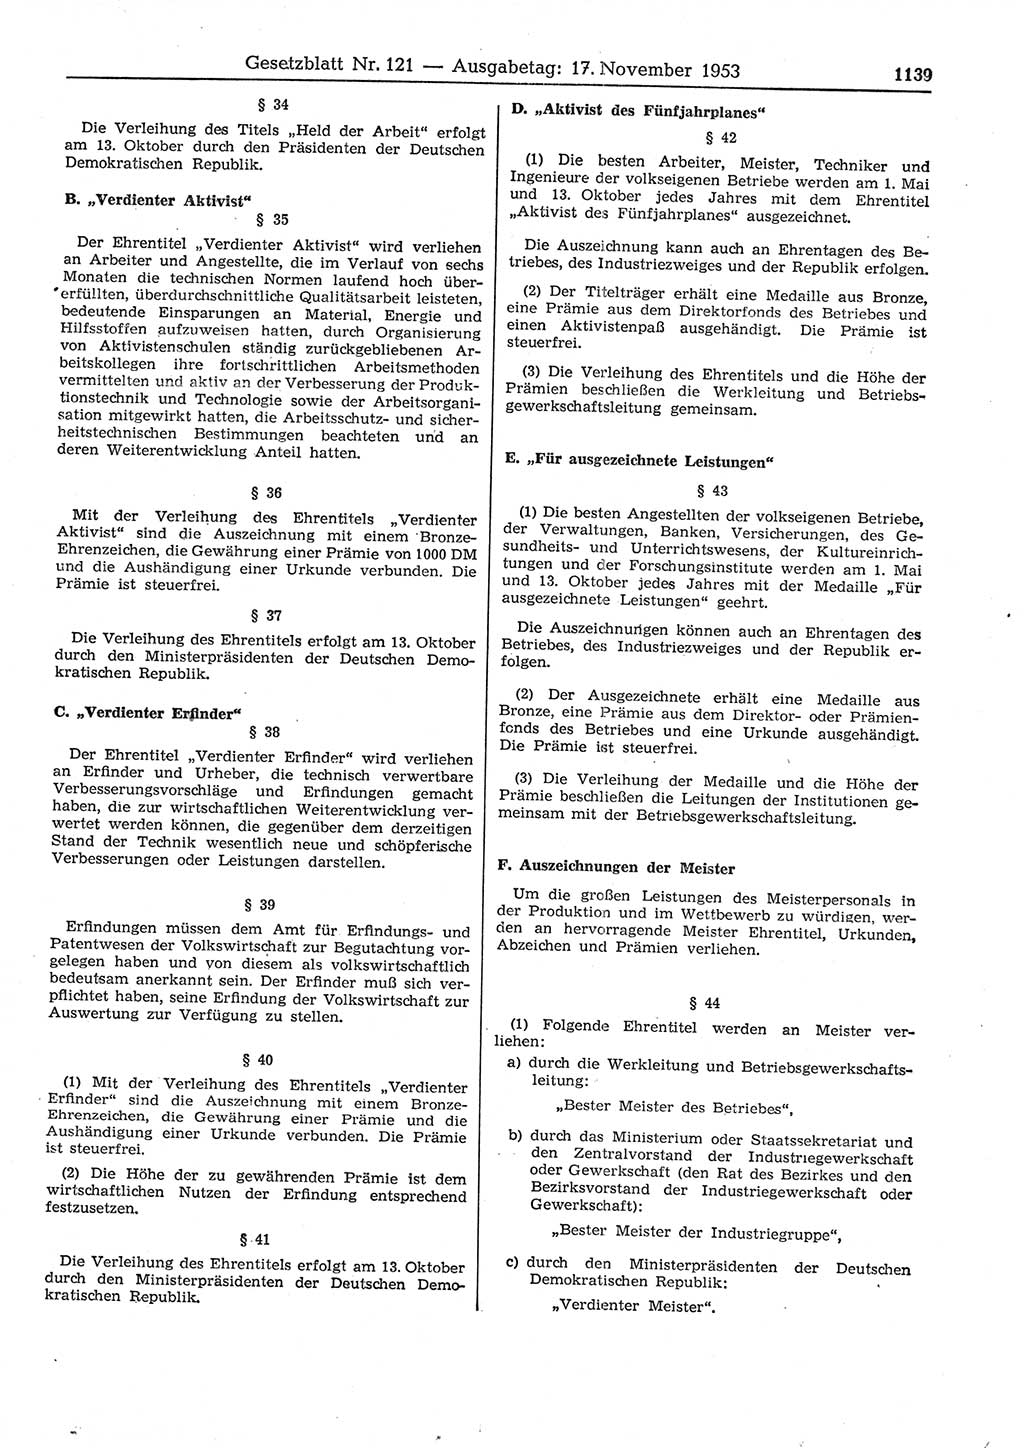 Gesetzblatt (GBl.) der Deutschen Demokratischen Republik (DDR) 1953, Seite 1139 (GBl. DDR 1953, S. 1139)